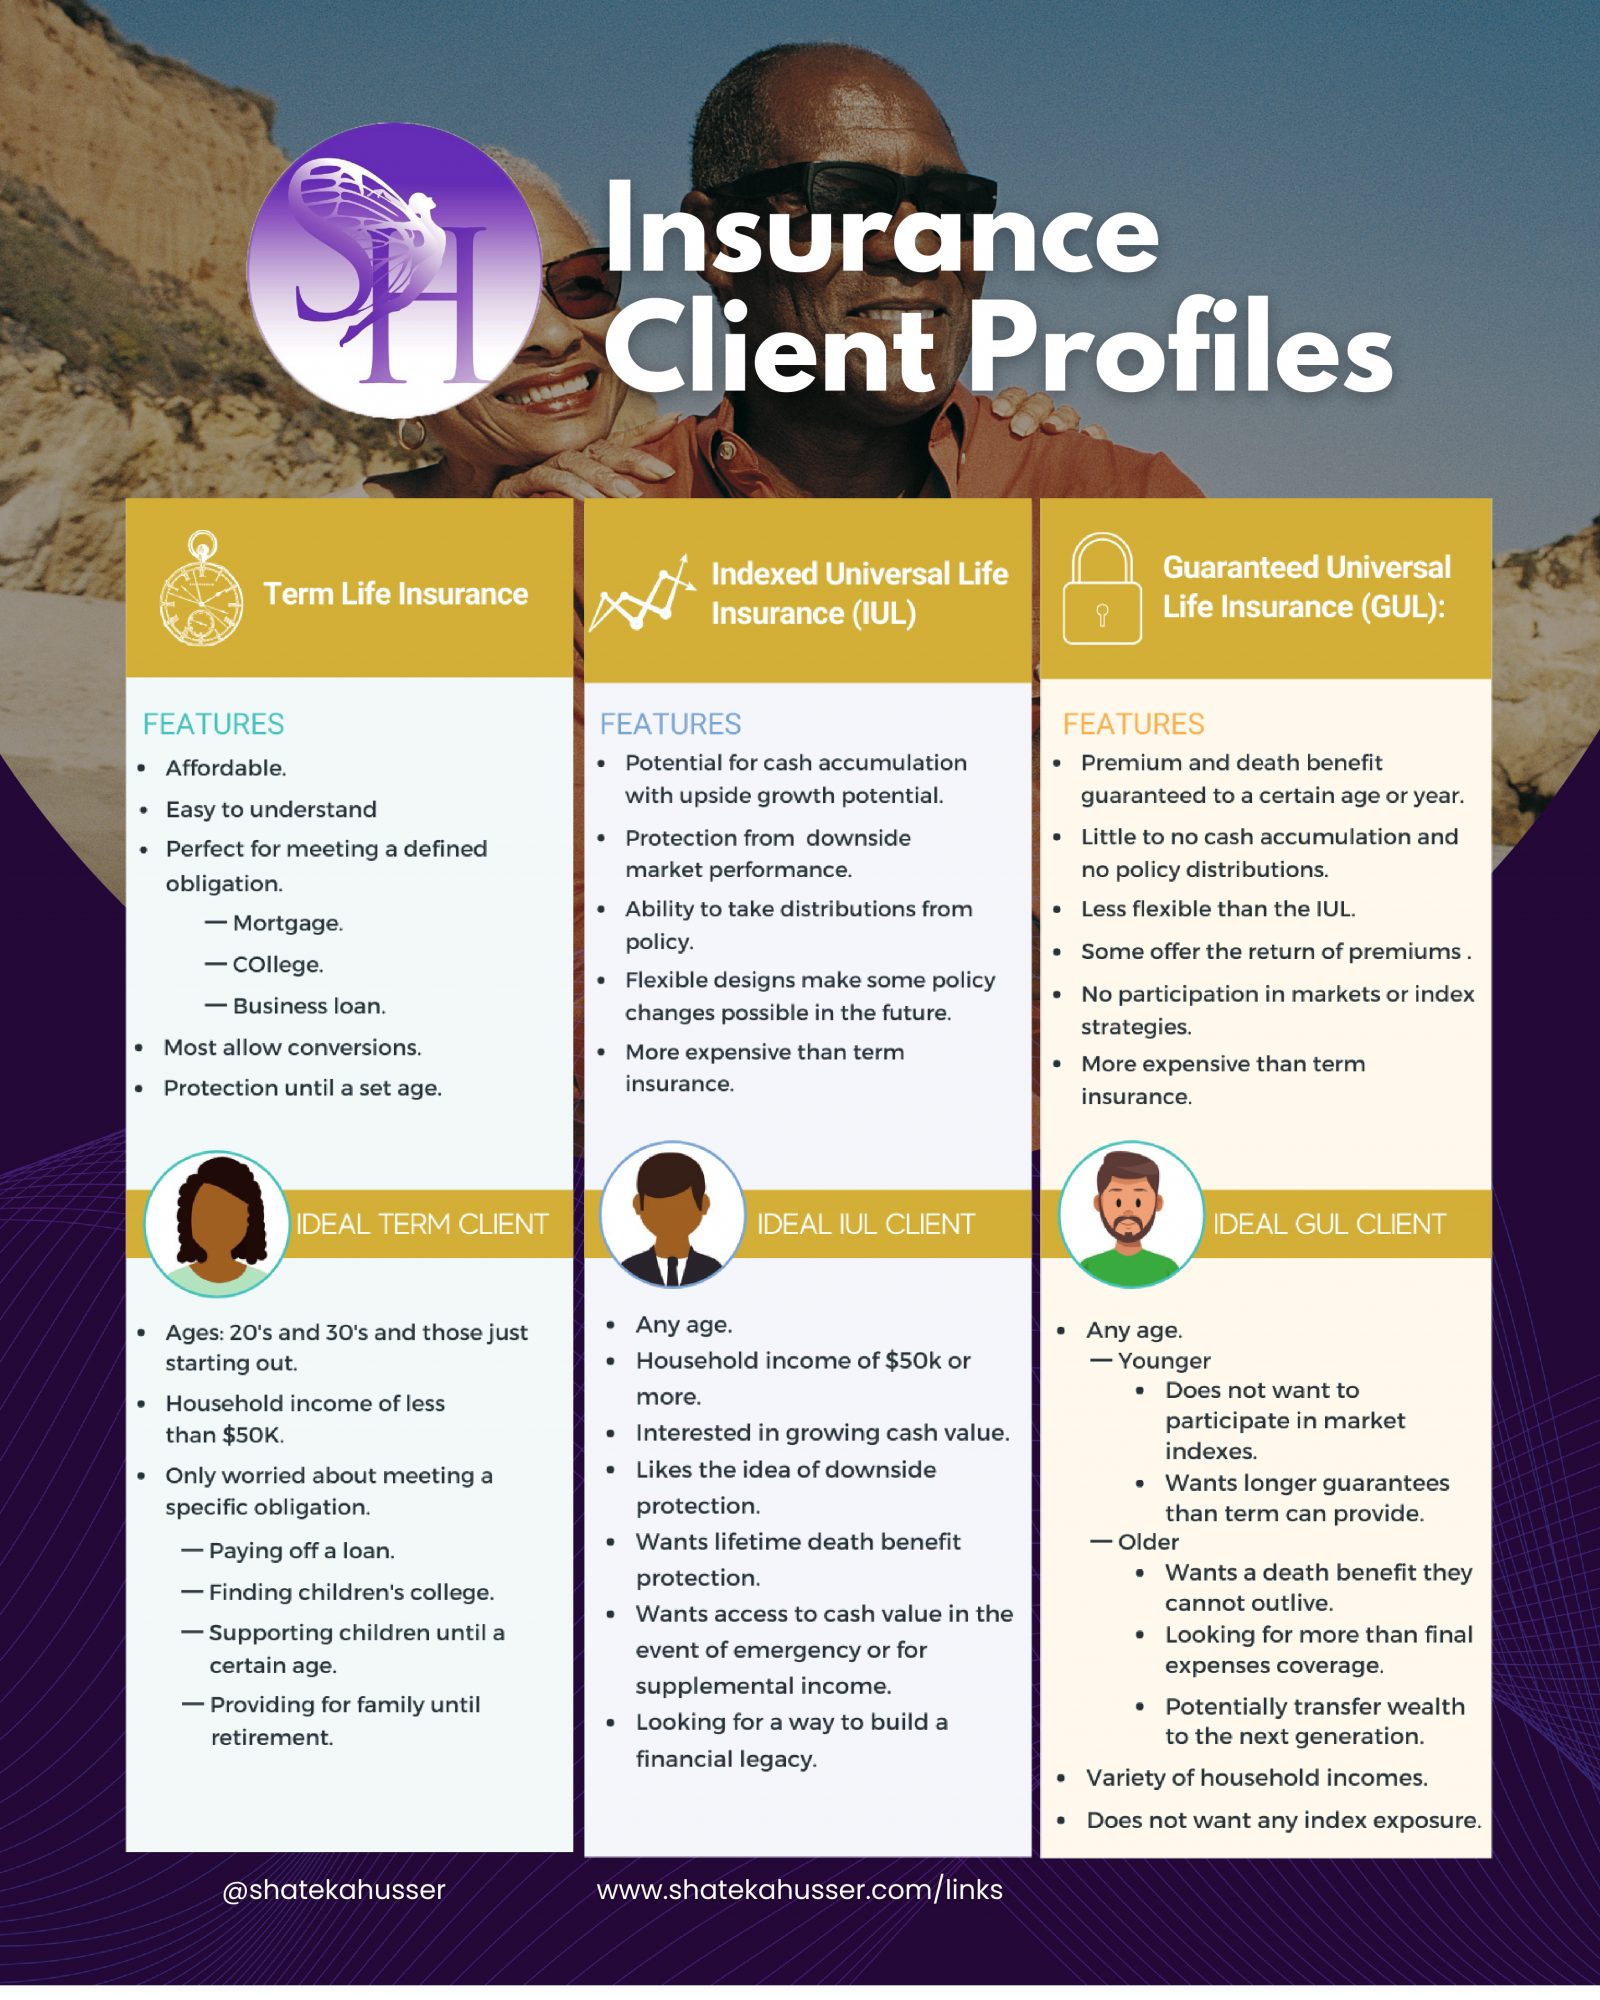 Insurance Client Profiles 01